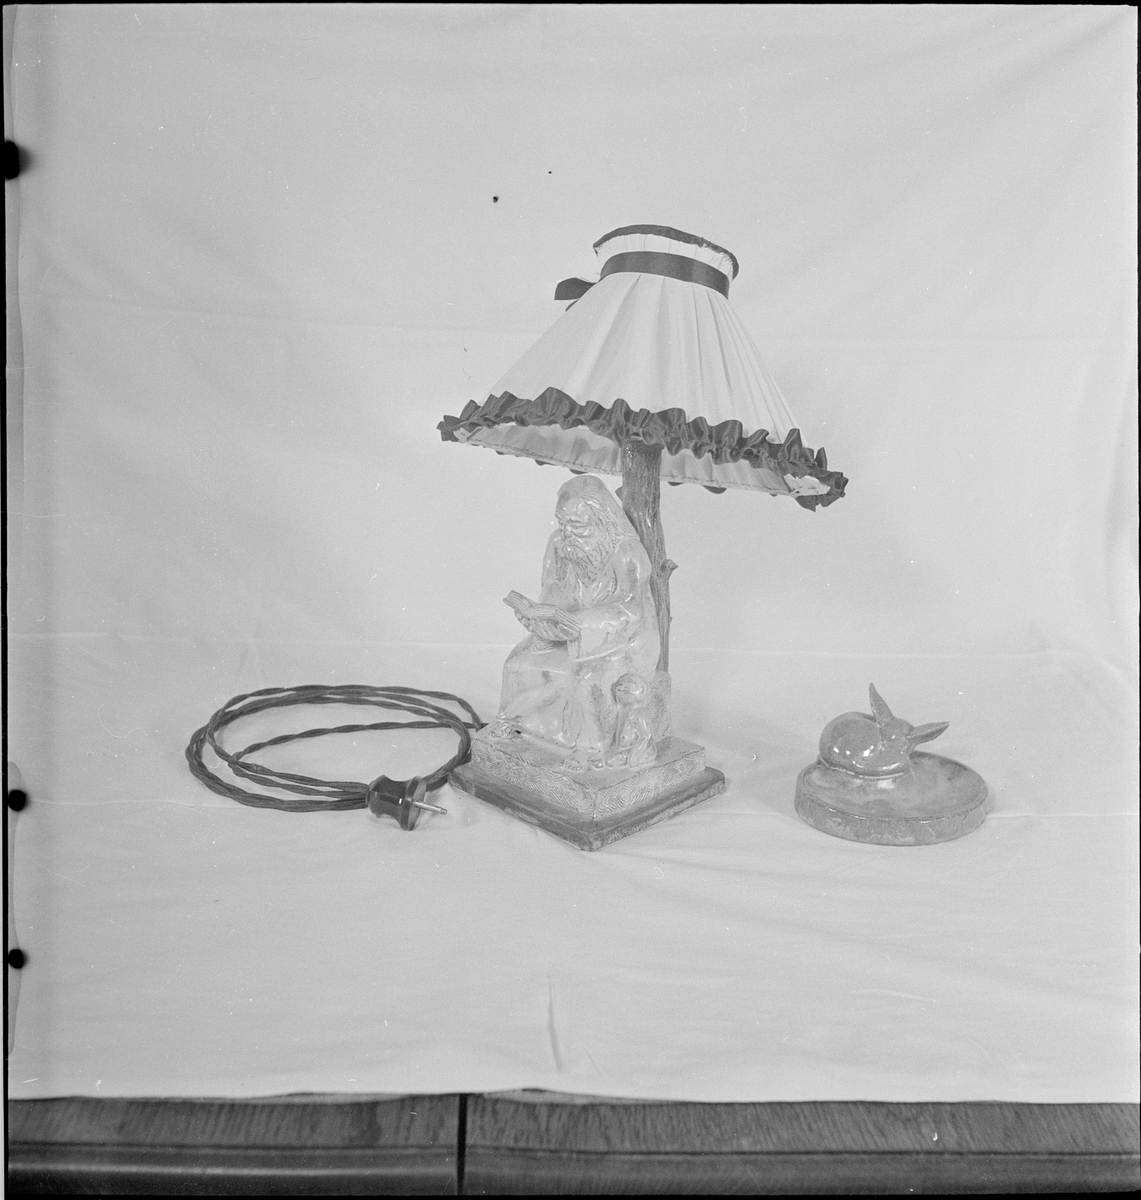 Keramiske produkter laget av keramiker Osvald Osmundsen. Det er en lampe formet som en elefant og en lampe formet som en mann som leser under et tre og noen keramikkfigurer.